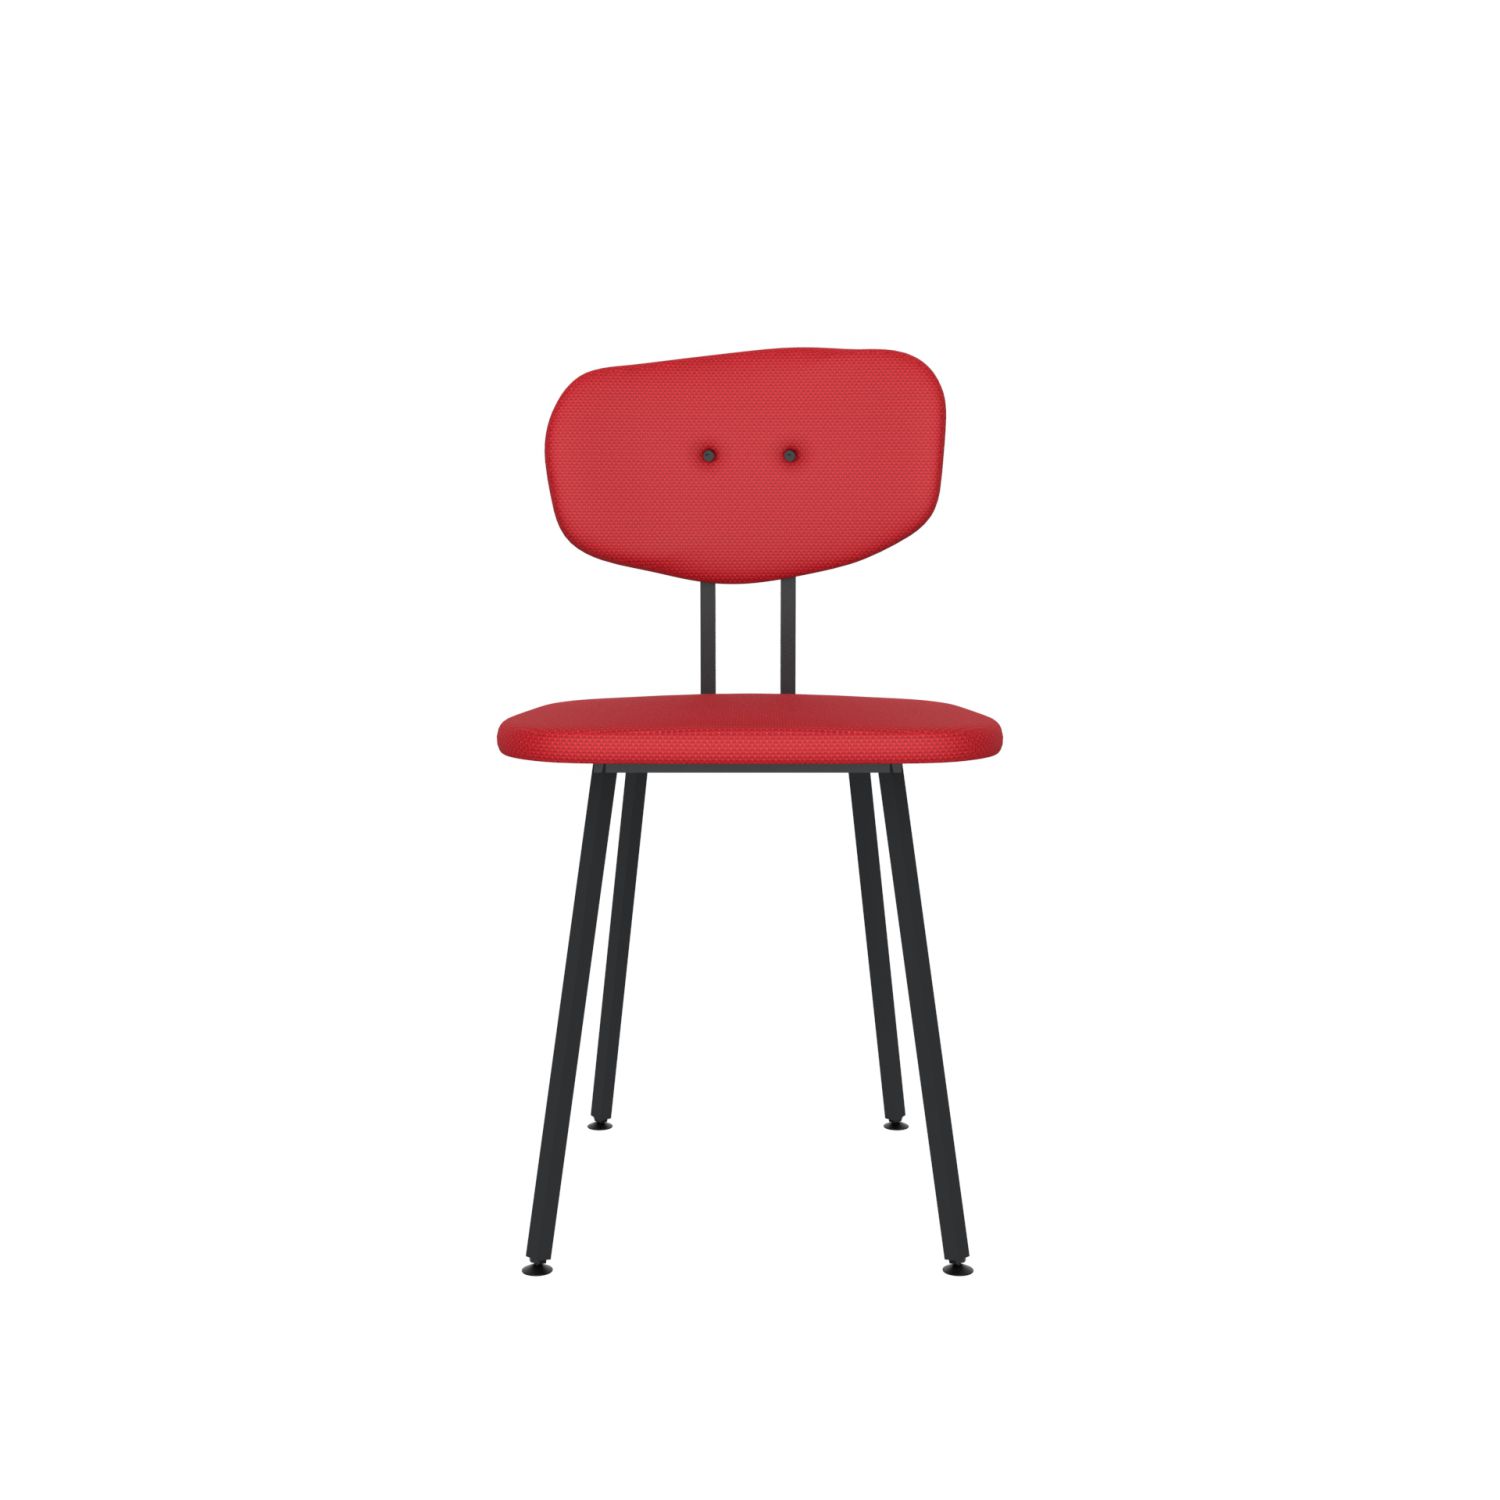 lensvelt maarten baas chair 101 not stackable without armrests backrest c grenada red 010 black ral9005 hard leg ends